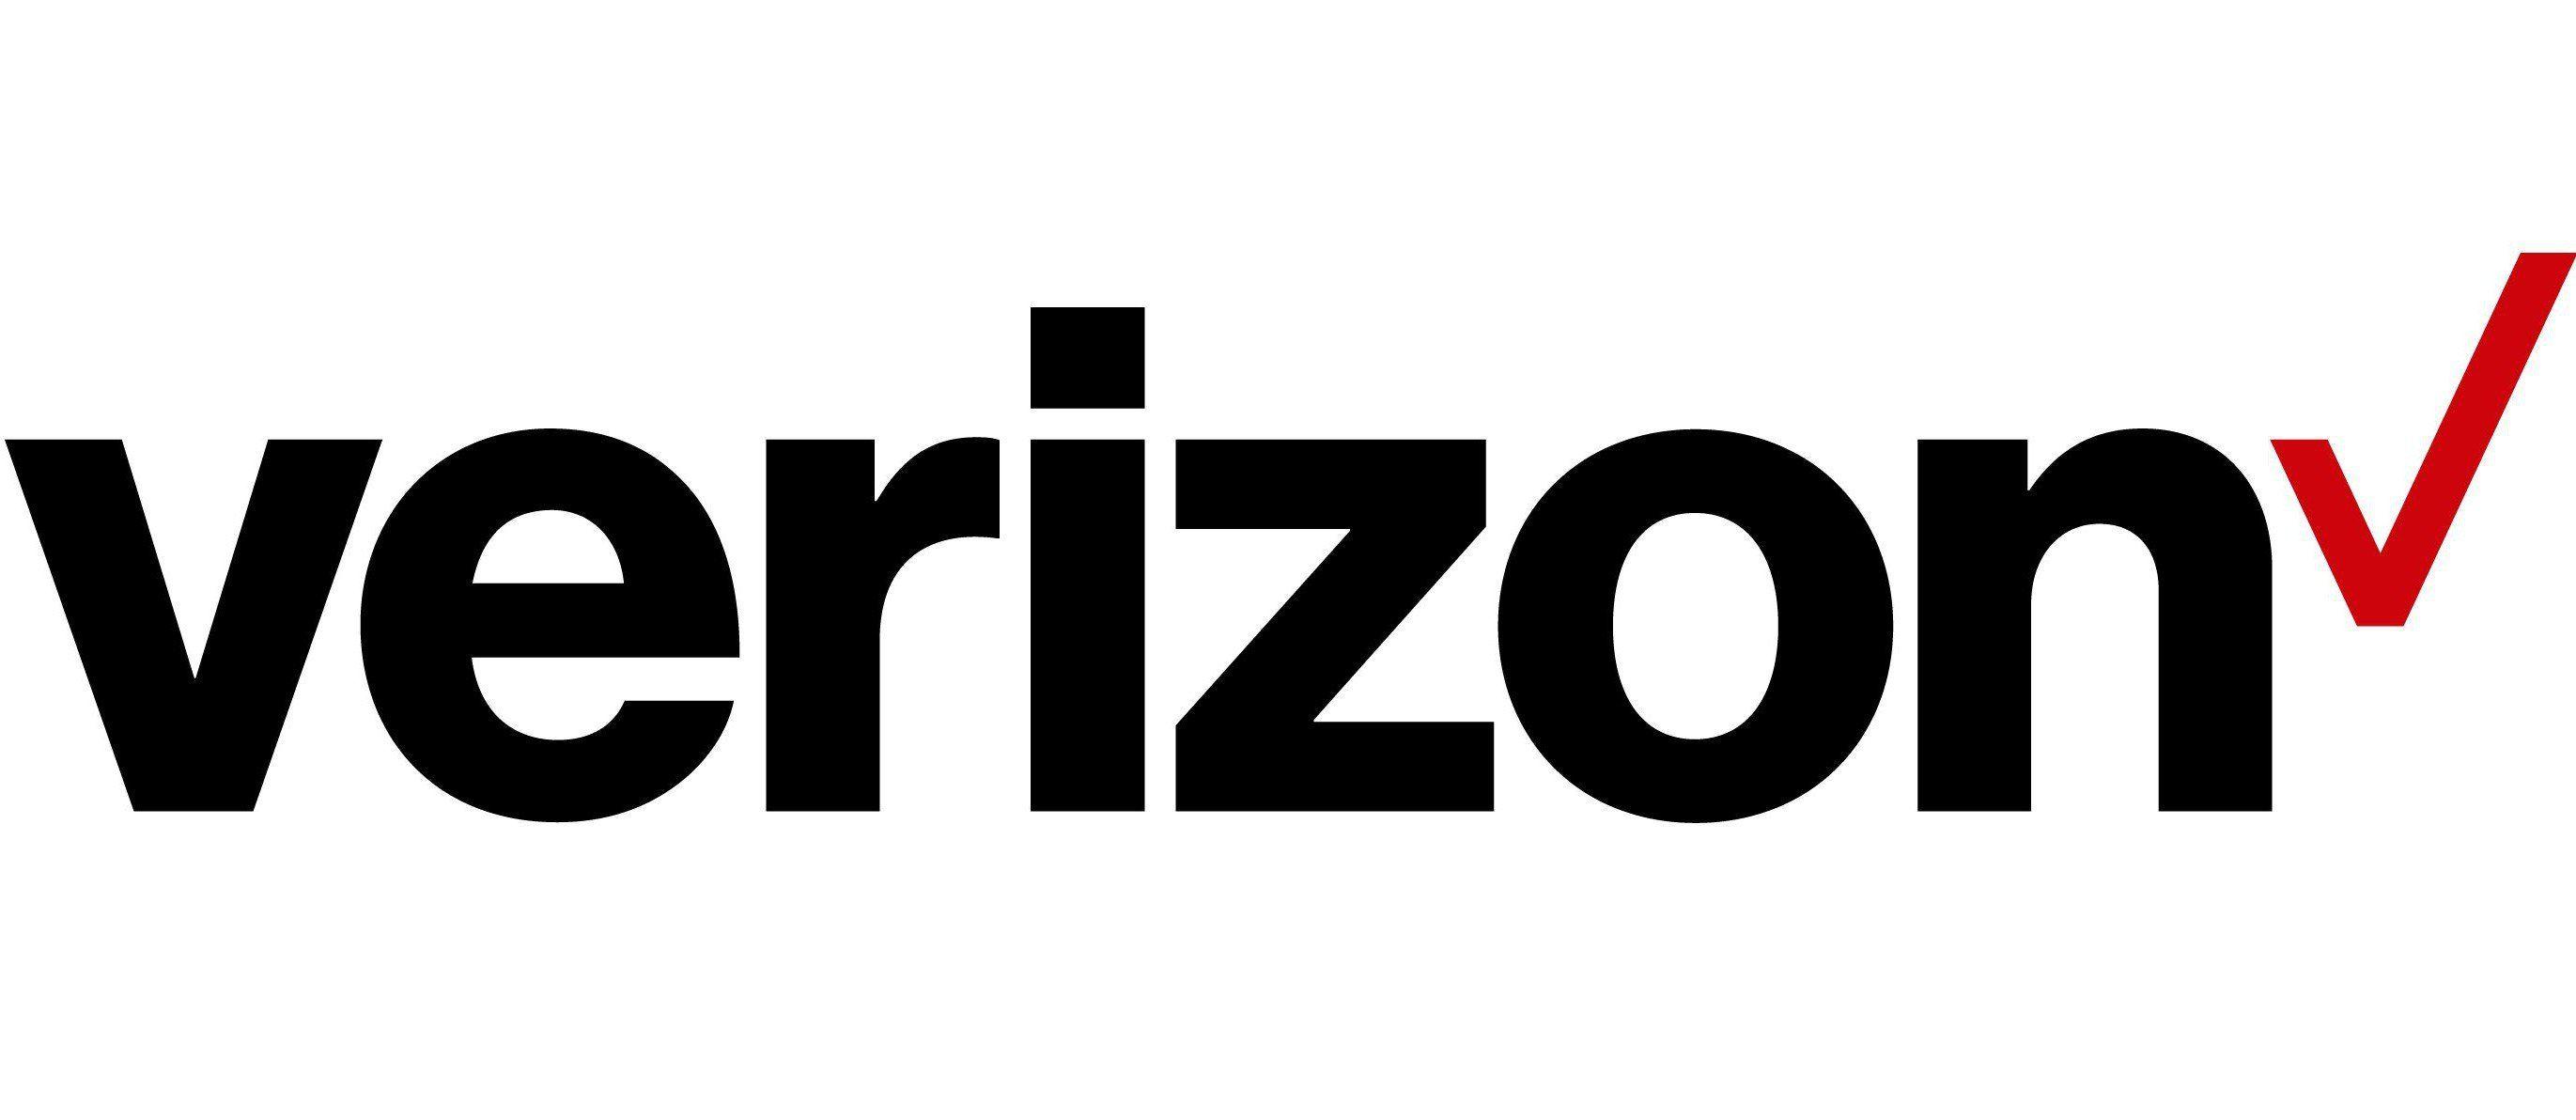 Google Verizon Logo - T Mobile CEO Mocks New Verizon Logo